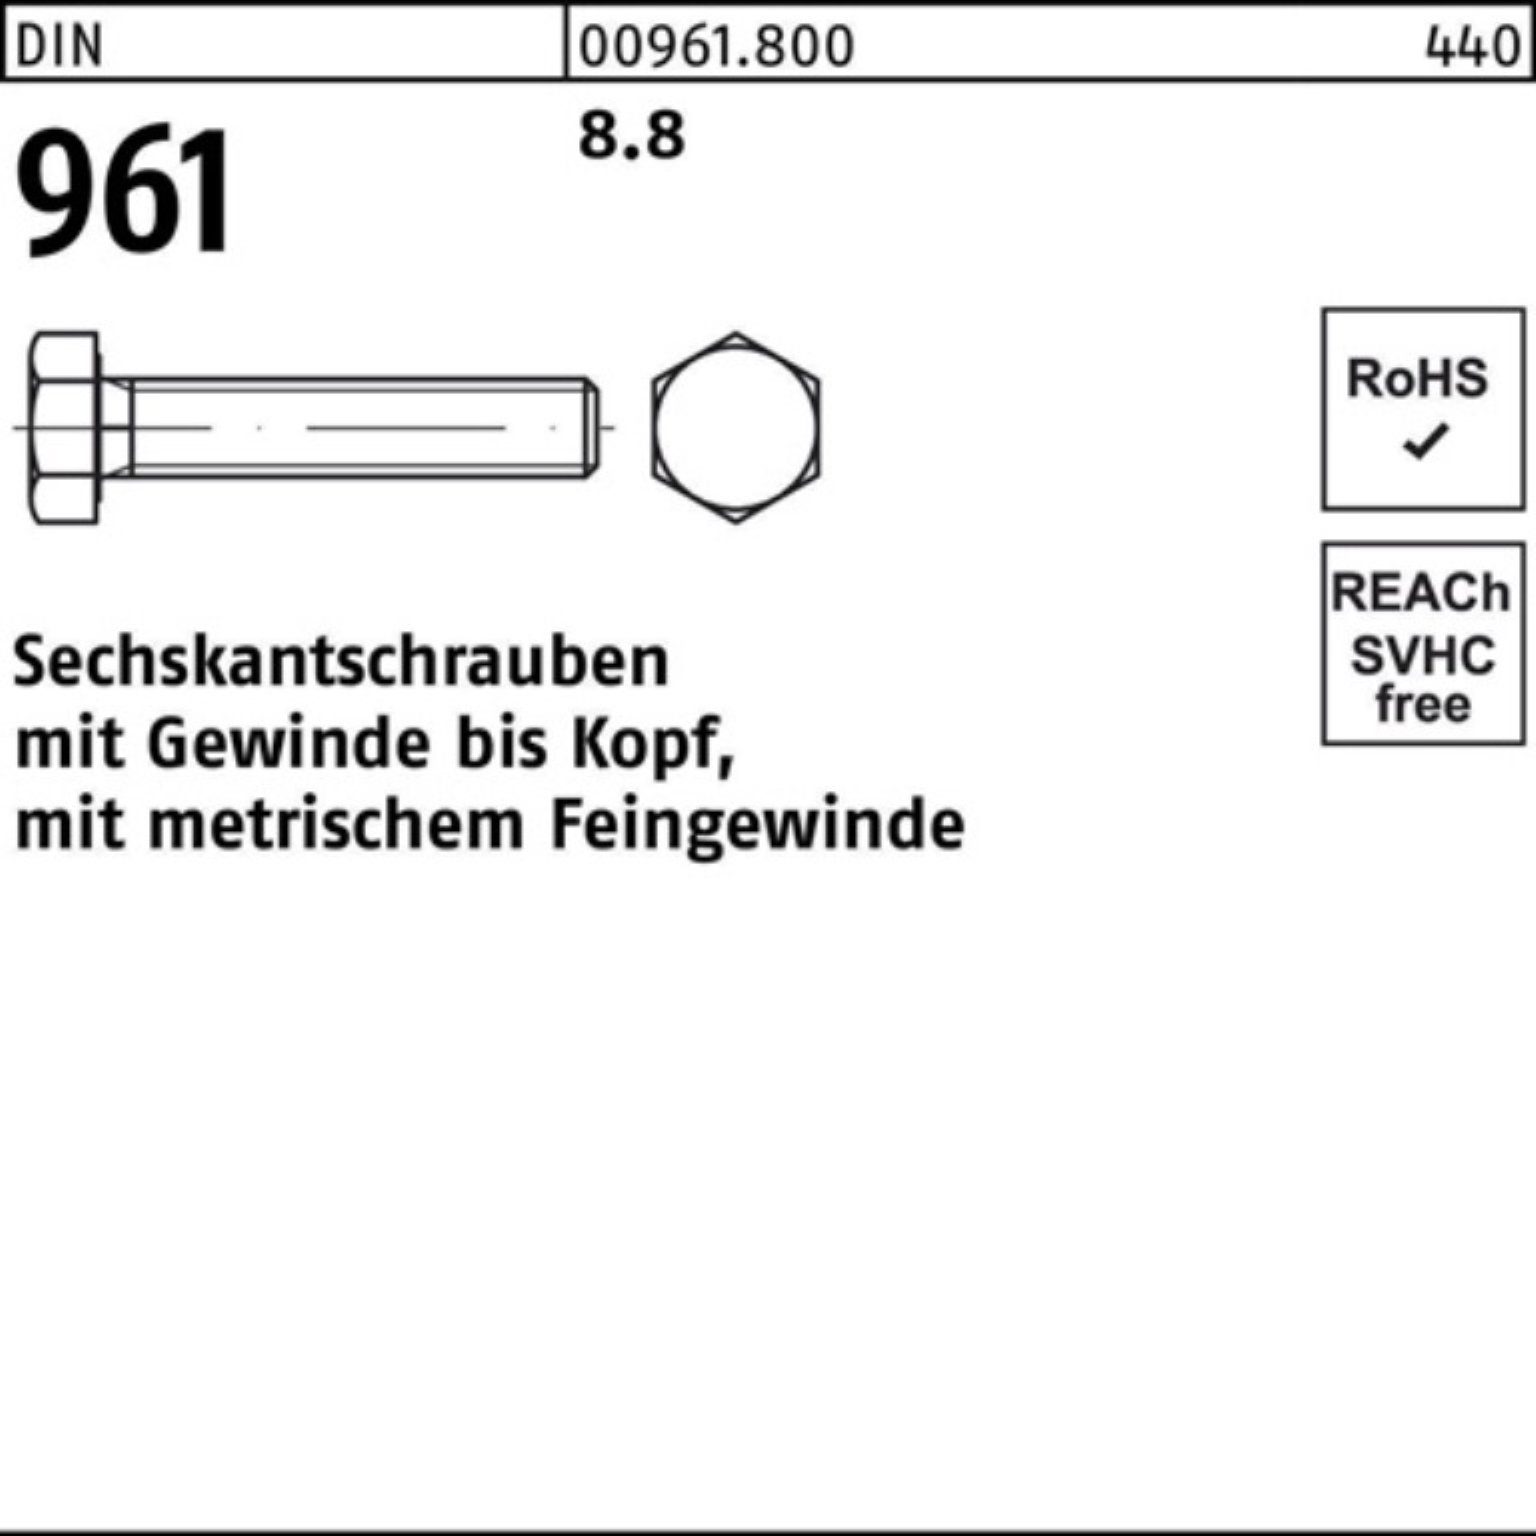 Reyher Sechskantschraube 100er Pack Sechskantschraube 961 8.8 DIN Stück 25 DIN M18x1,5x120 VG